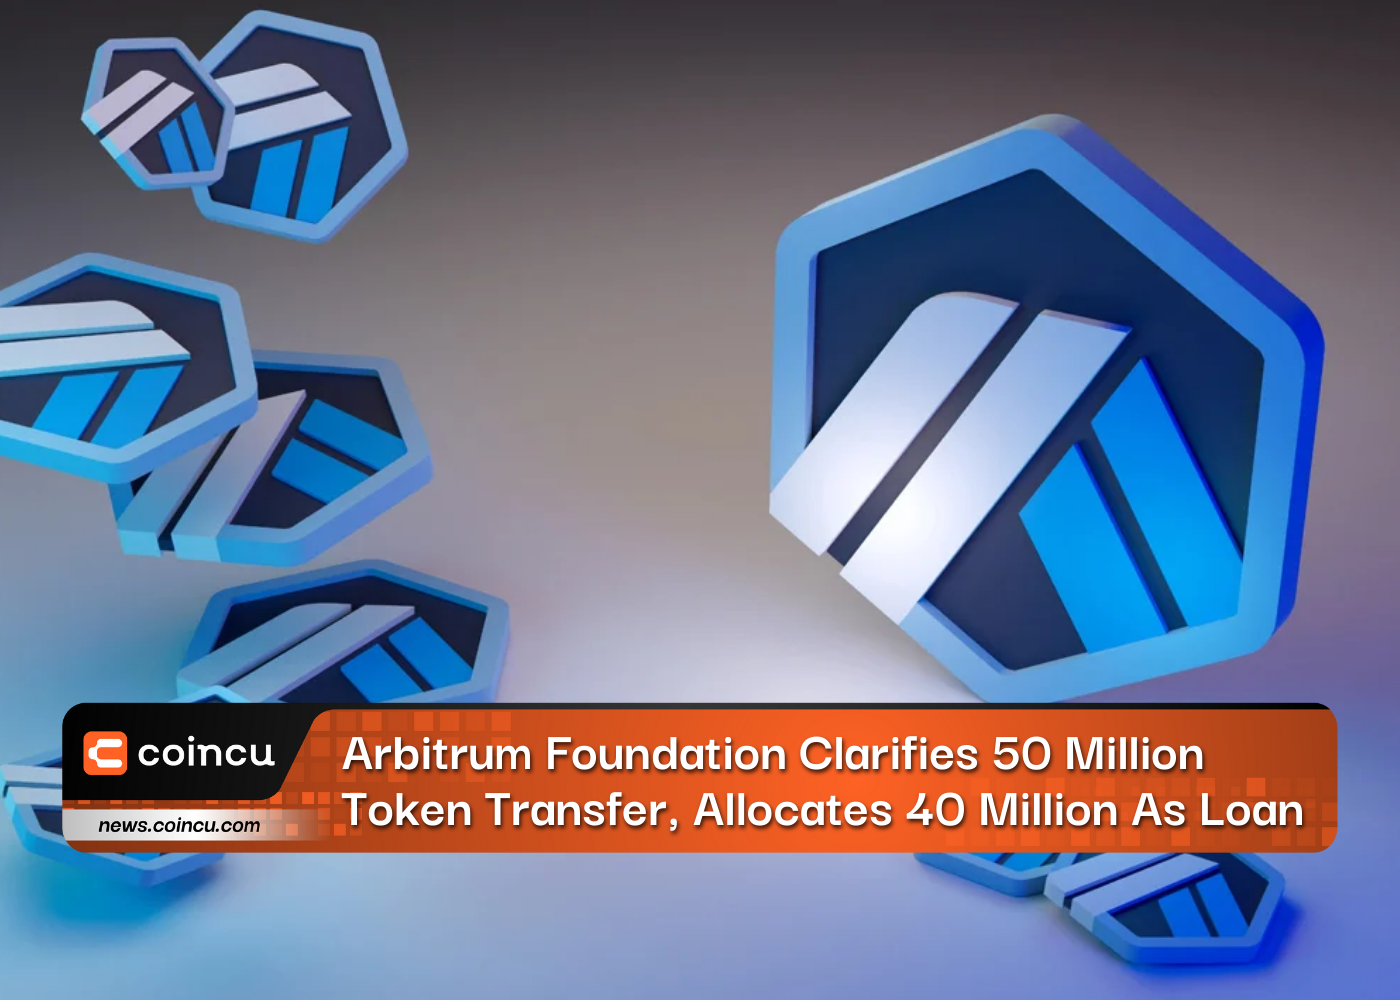 Arbitrum Foundation Clarifies 50 Million Token Transfer, Allocates 40 Million As Loan